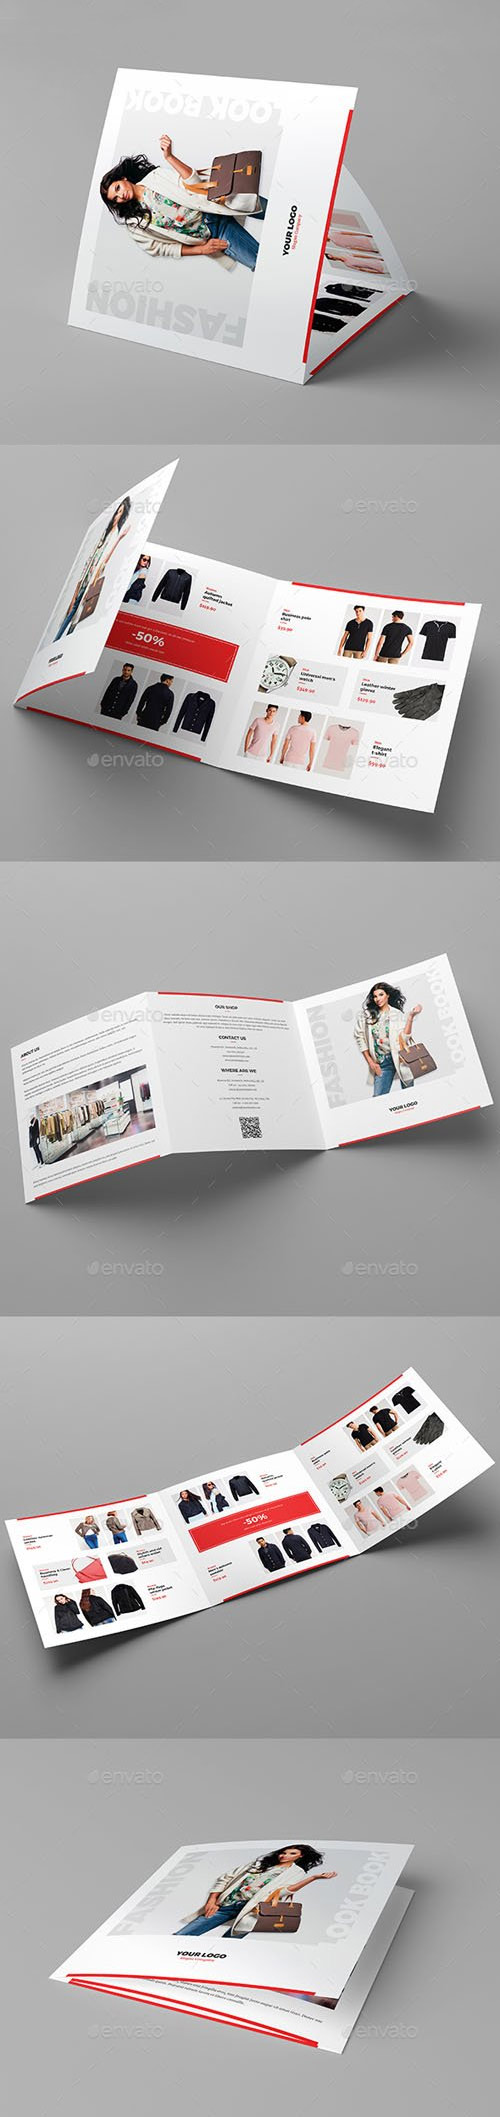 Brochure - Fashion Look Book Tri-Fold Square 20916941